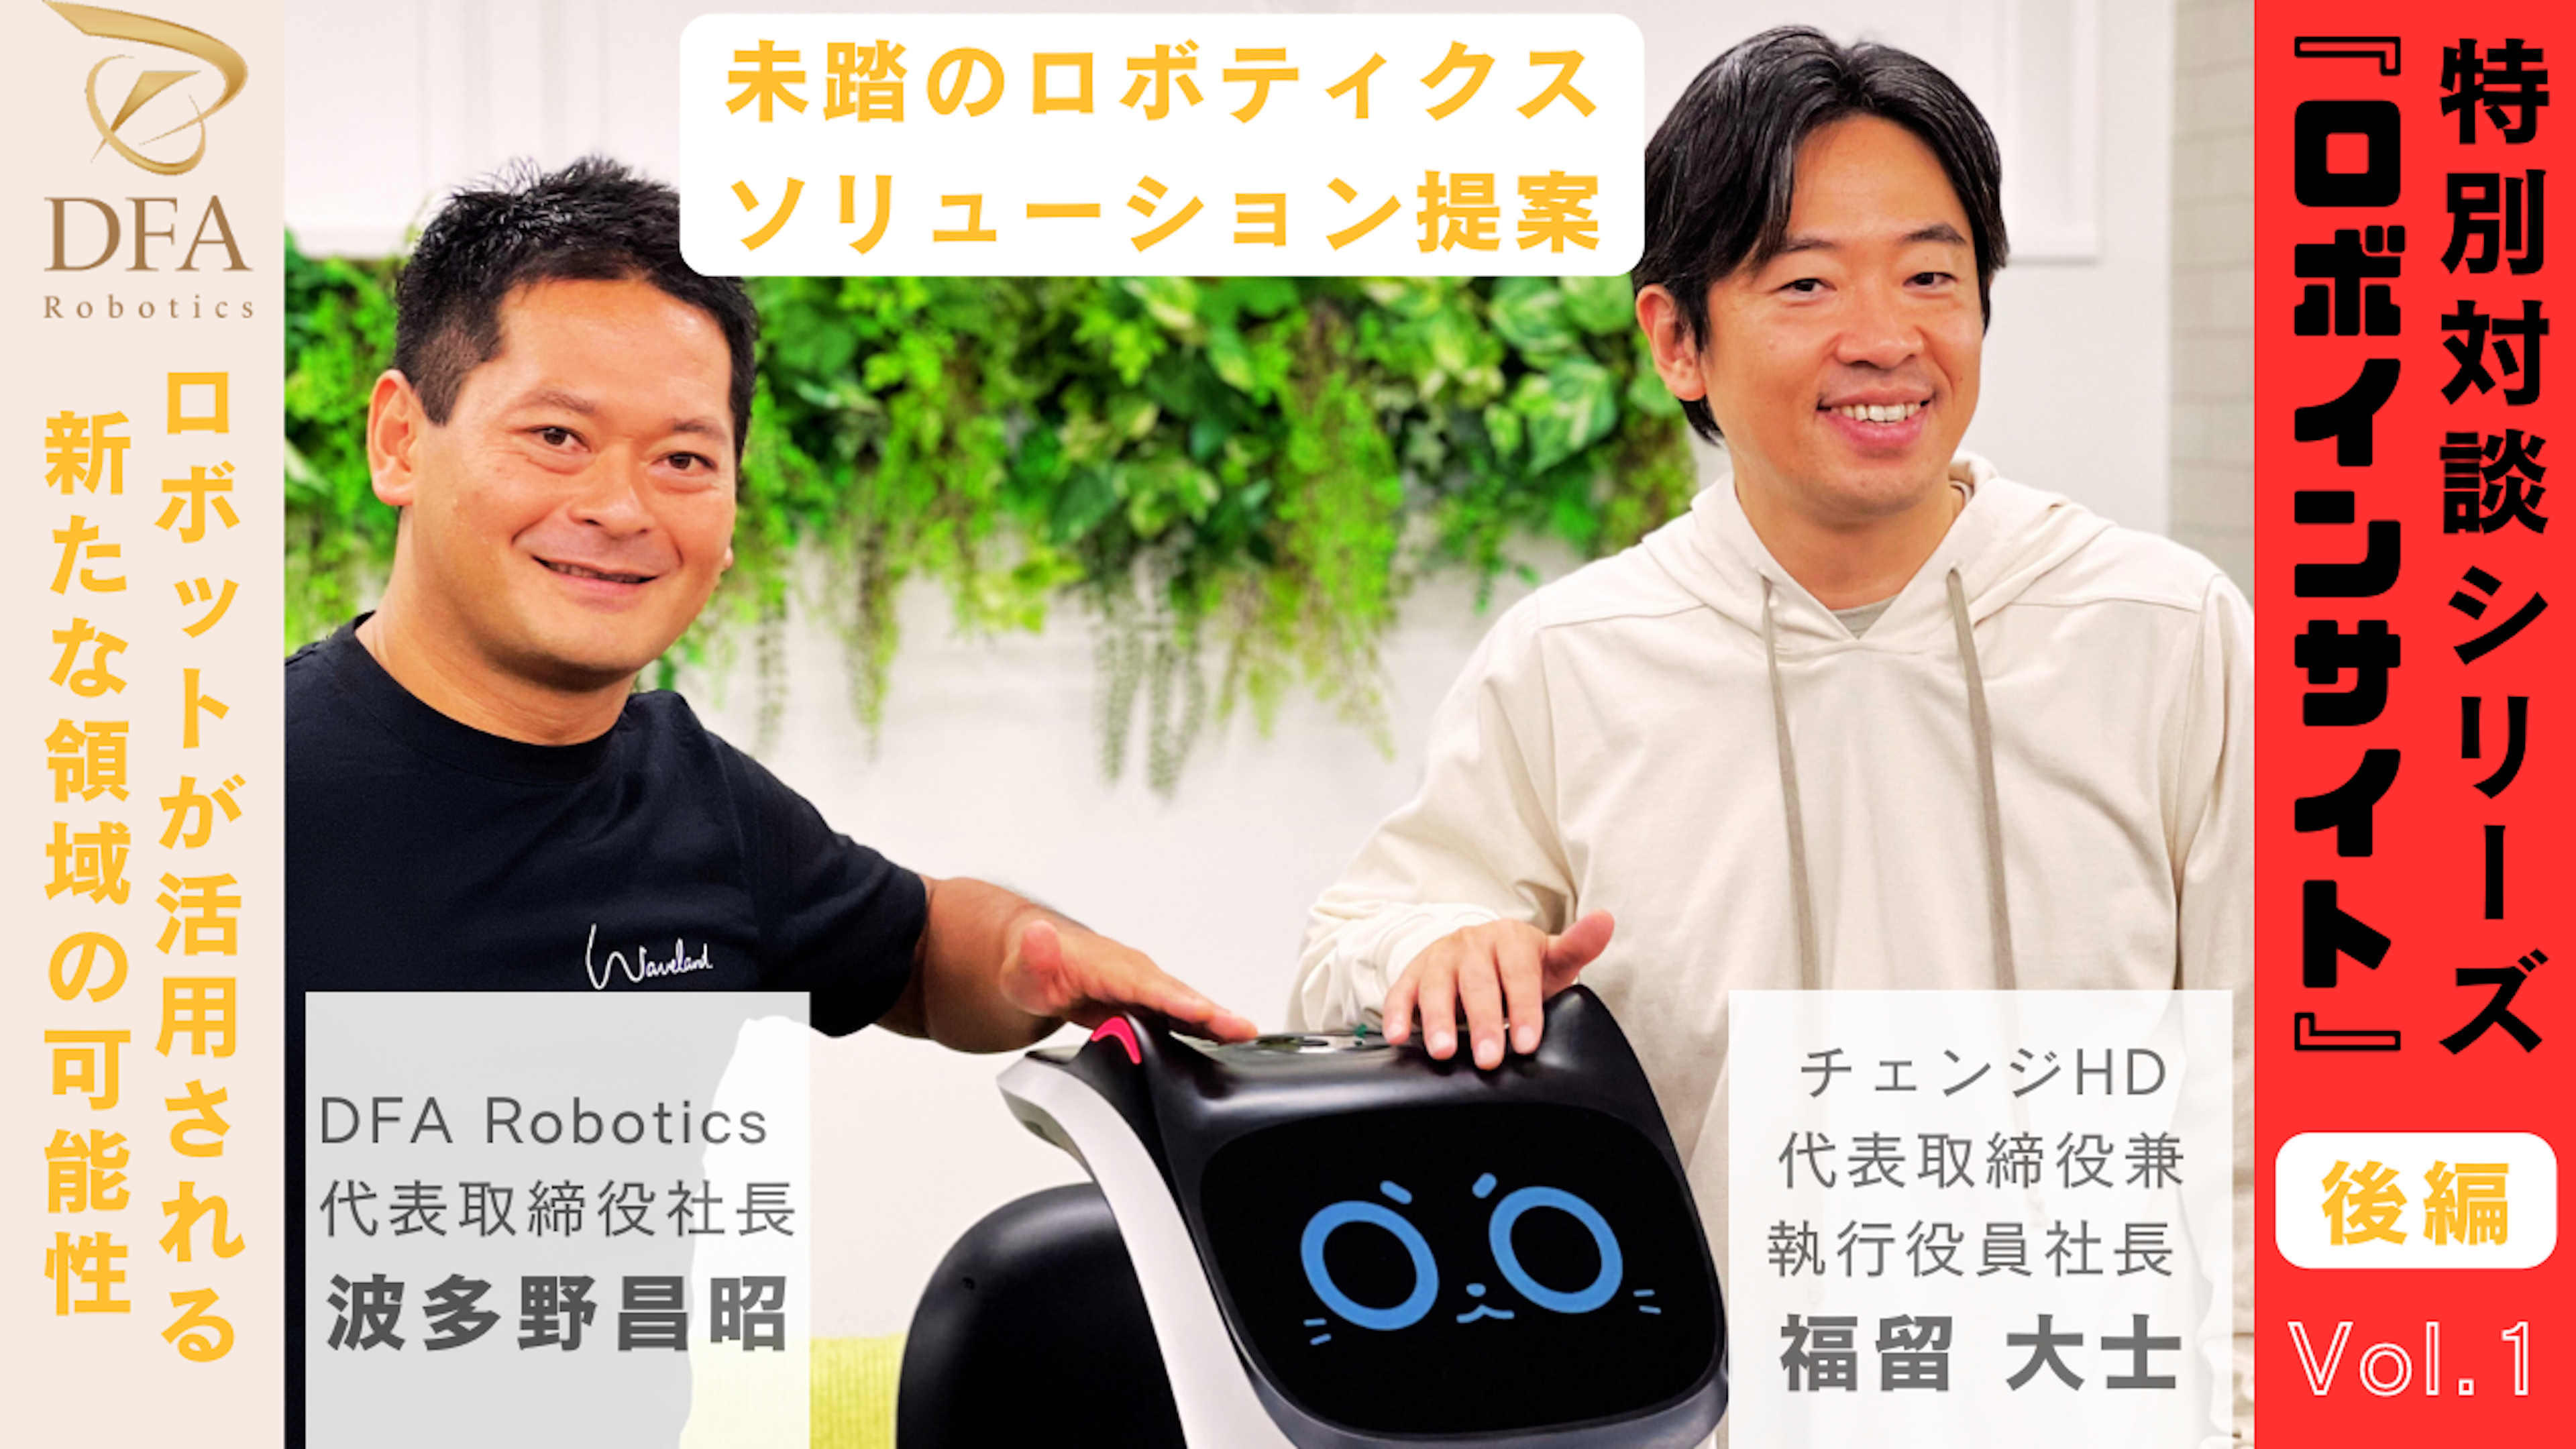 【ロボインサイト Vol.1　後編】世界のロボット活用事例から、未踏のロボティクスソリューションを提案